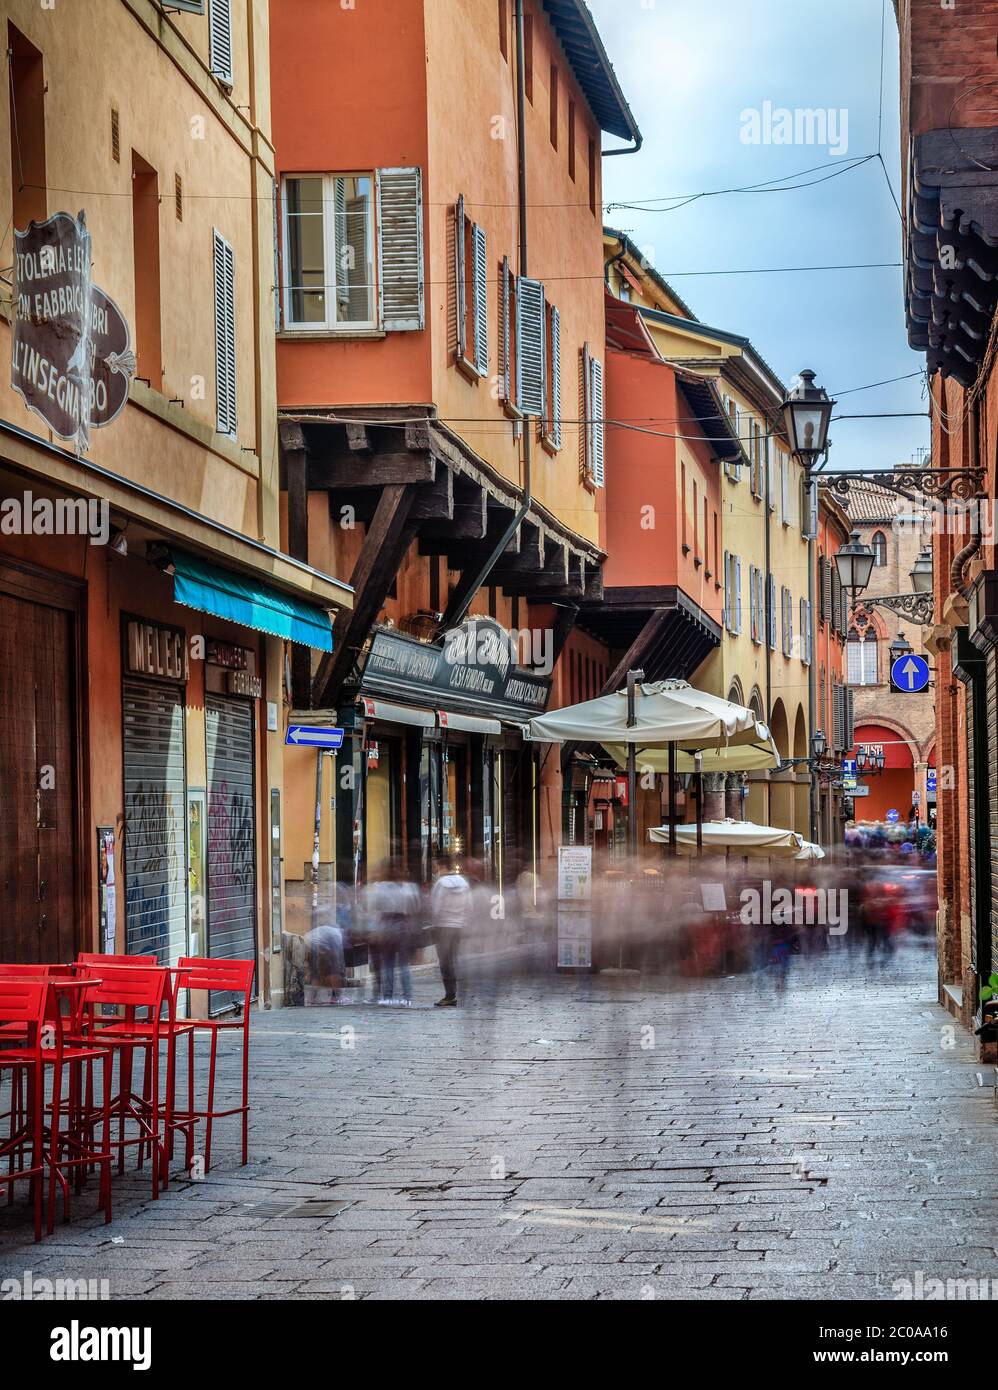 Bologna, Italien, 20. September 2015: Langzeitbelichtung einer geschäftigen Handelsstraße im historischen Zentrum von Bologna, Italien Stockfoto